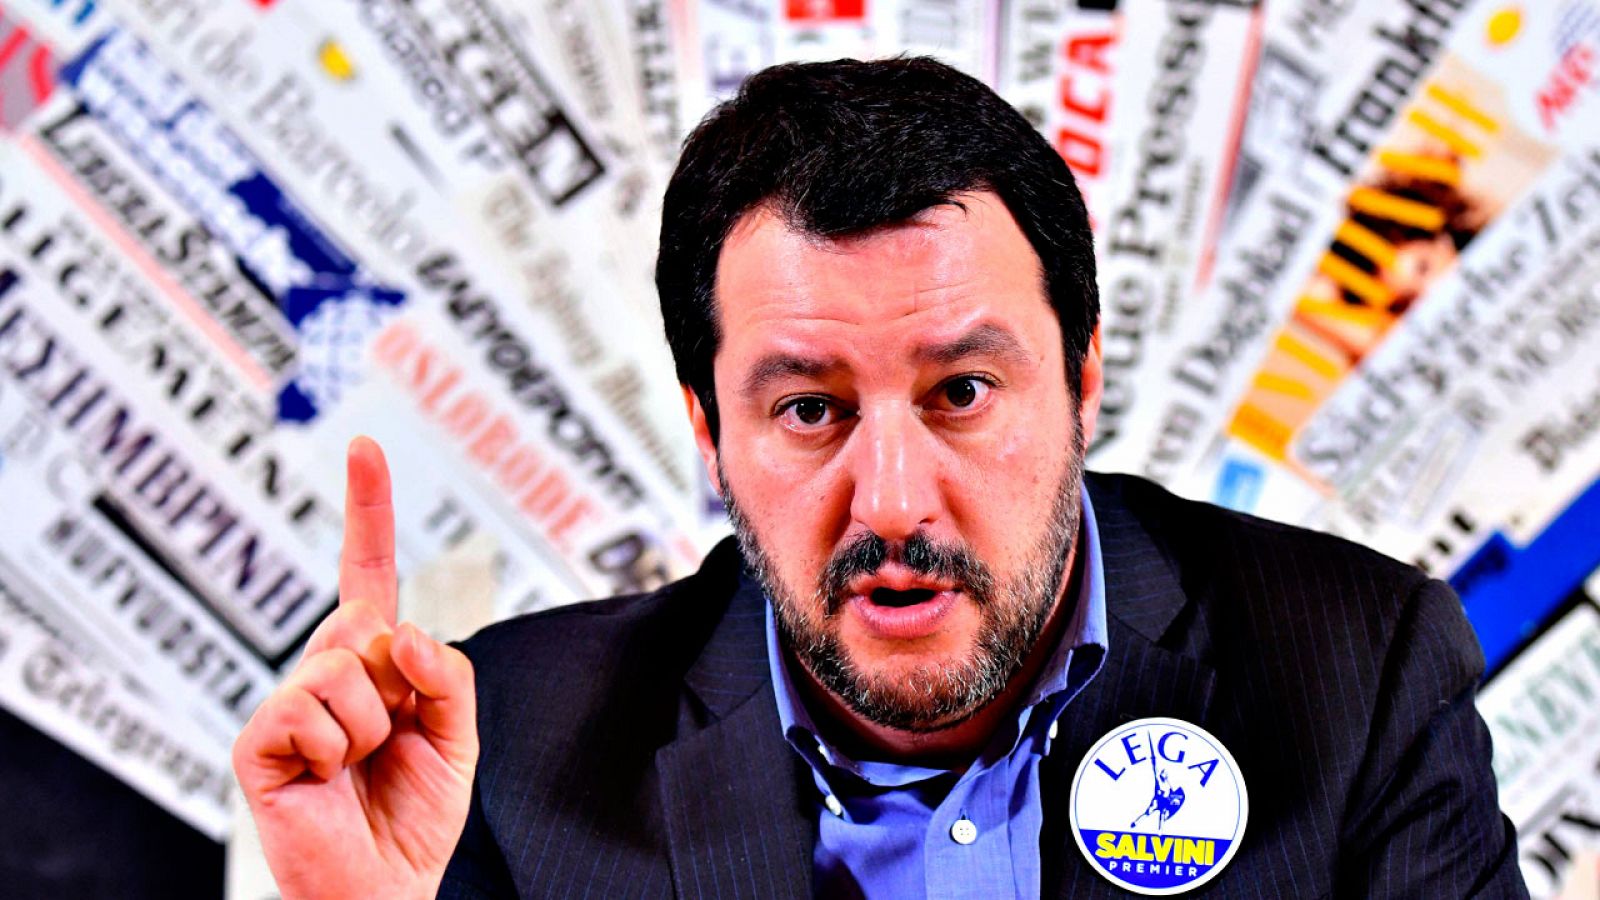 El líder de la Liga, Matteo Salvini, durante su encuentro con los medios internacionales en Roma